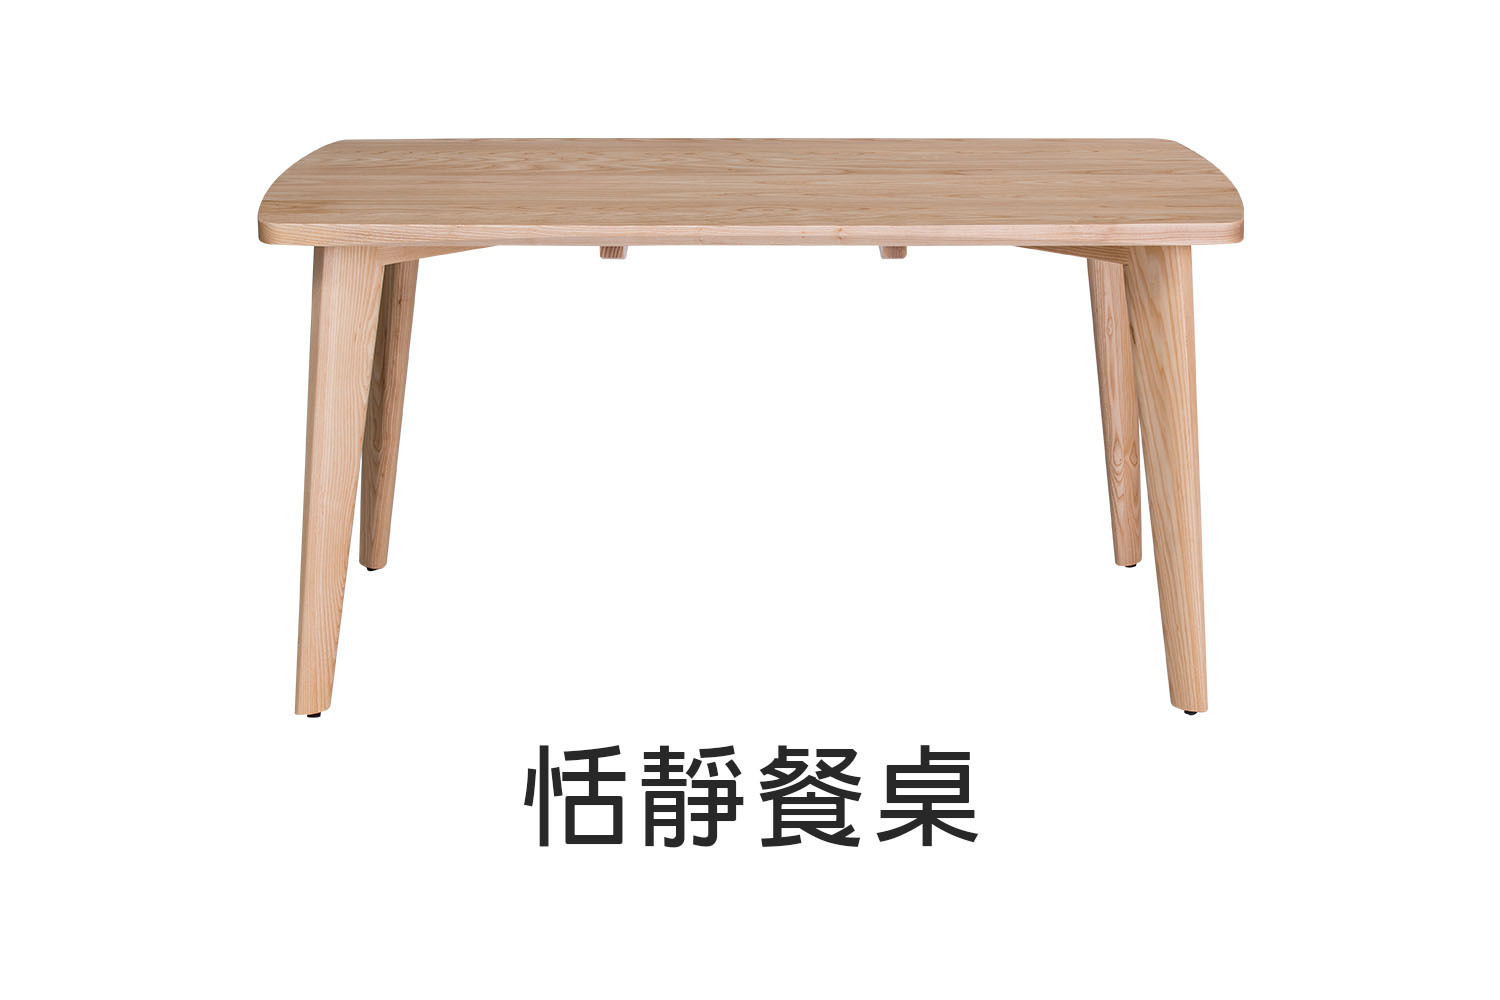 北歐風恬靜實木餐桌-150cm 180cm WRDT003R WRDT004R